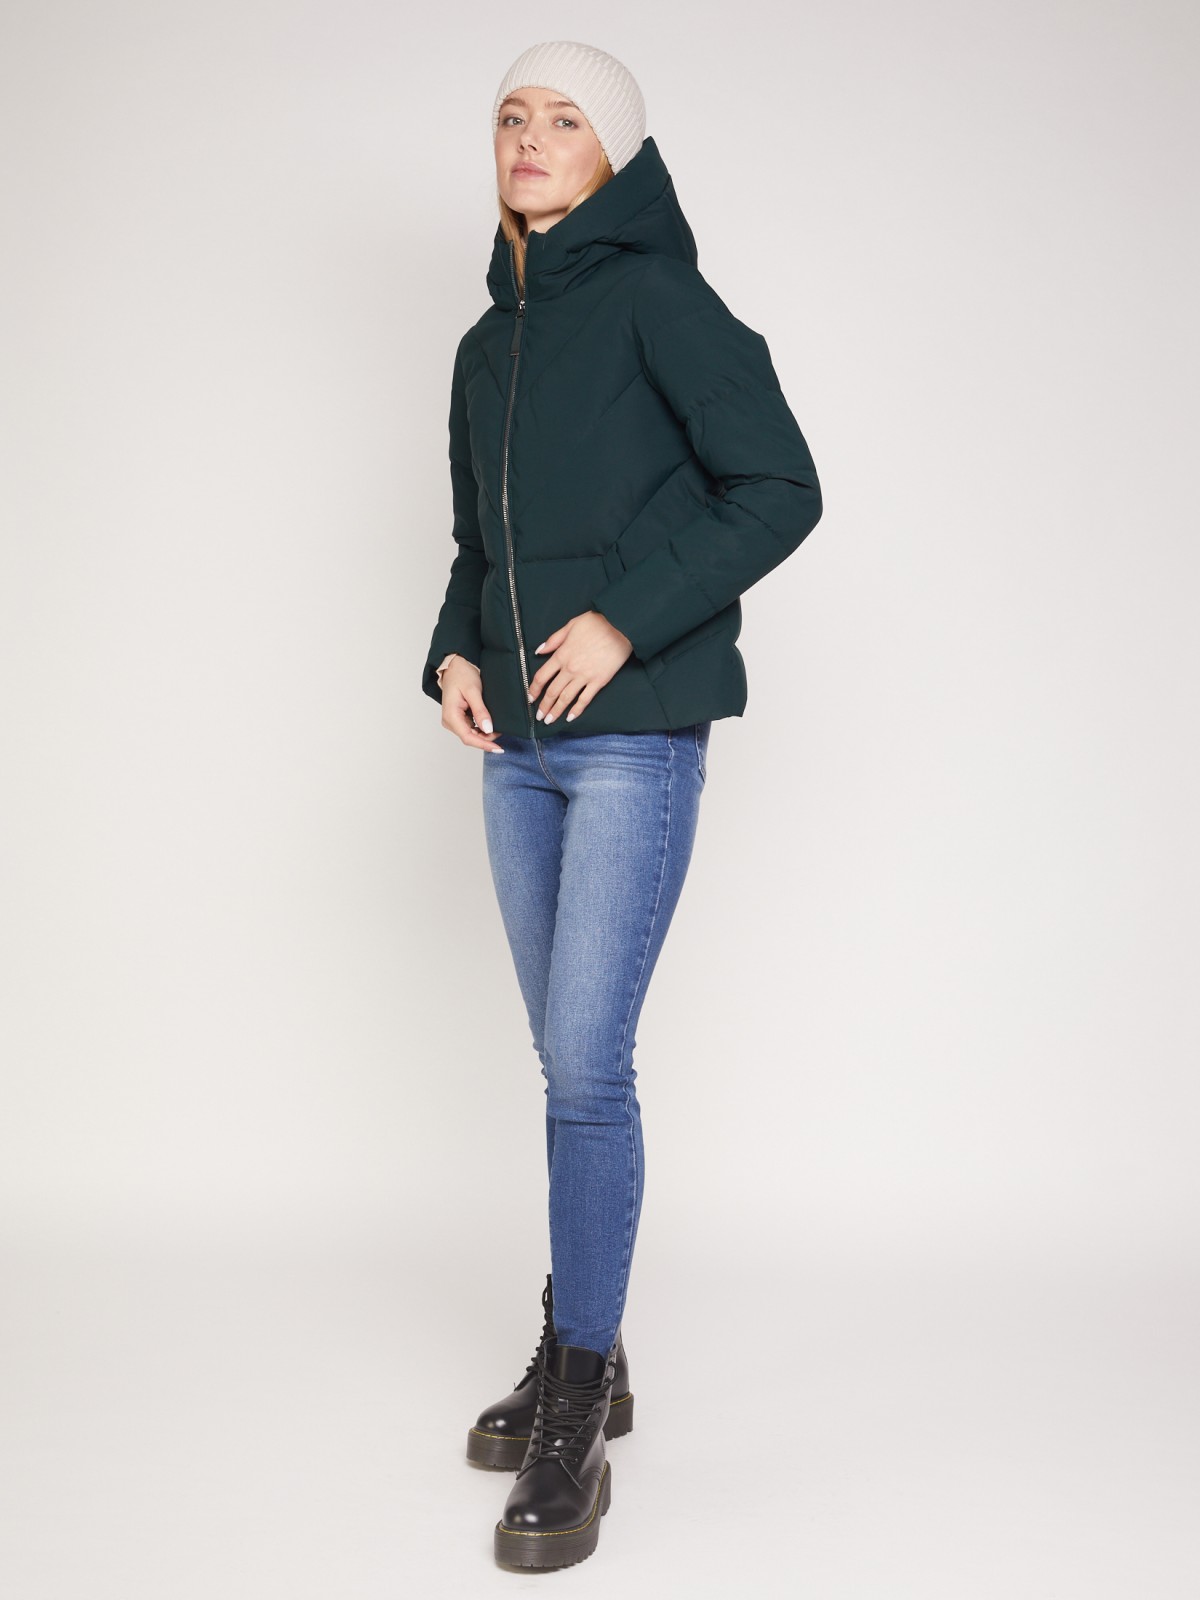 Утеплённая стёганая куртка с капюшоном zolla 021335102094, цвет темно-зеленый, размер XS - фото 2